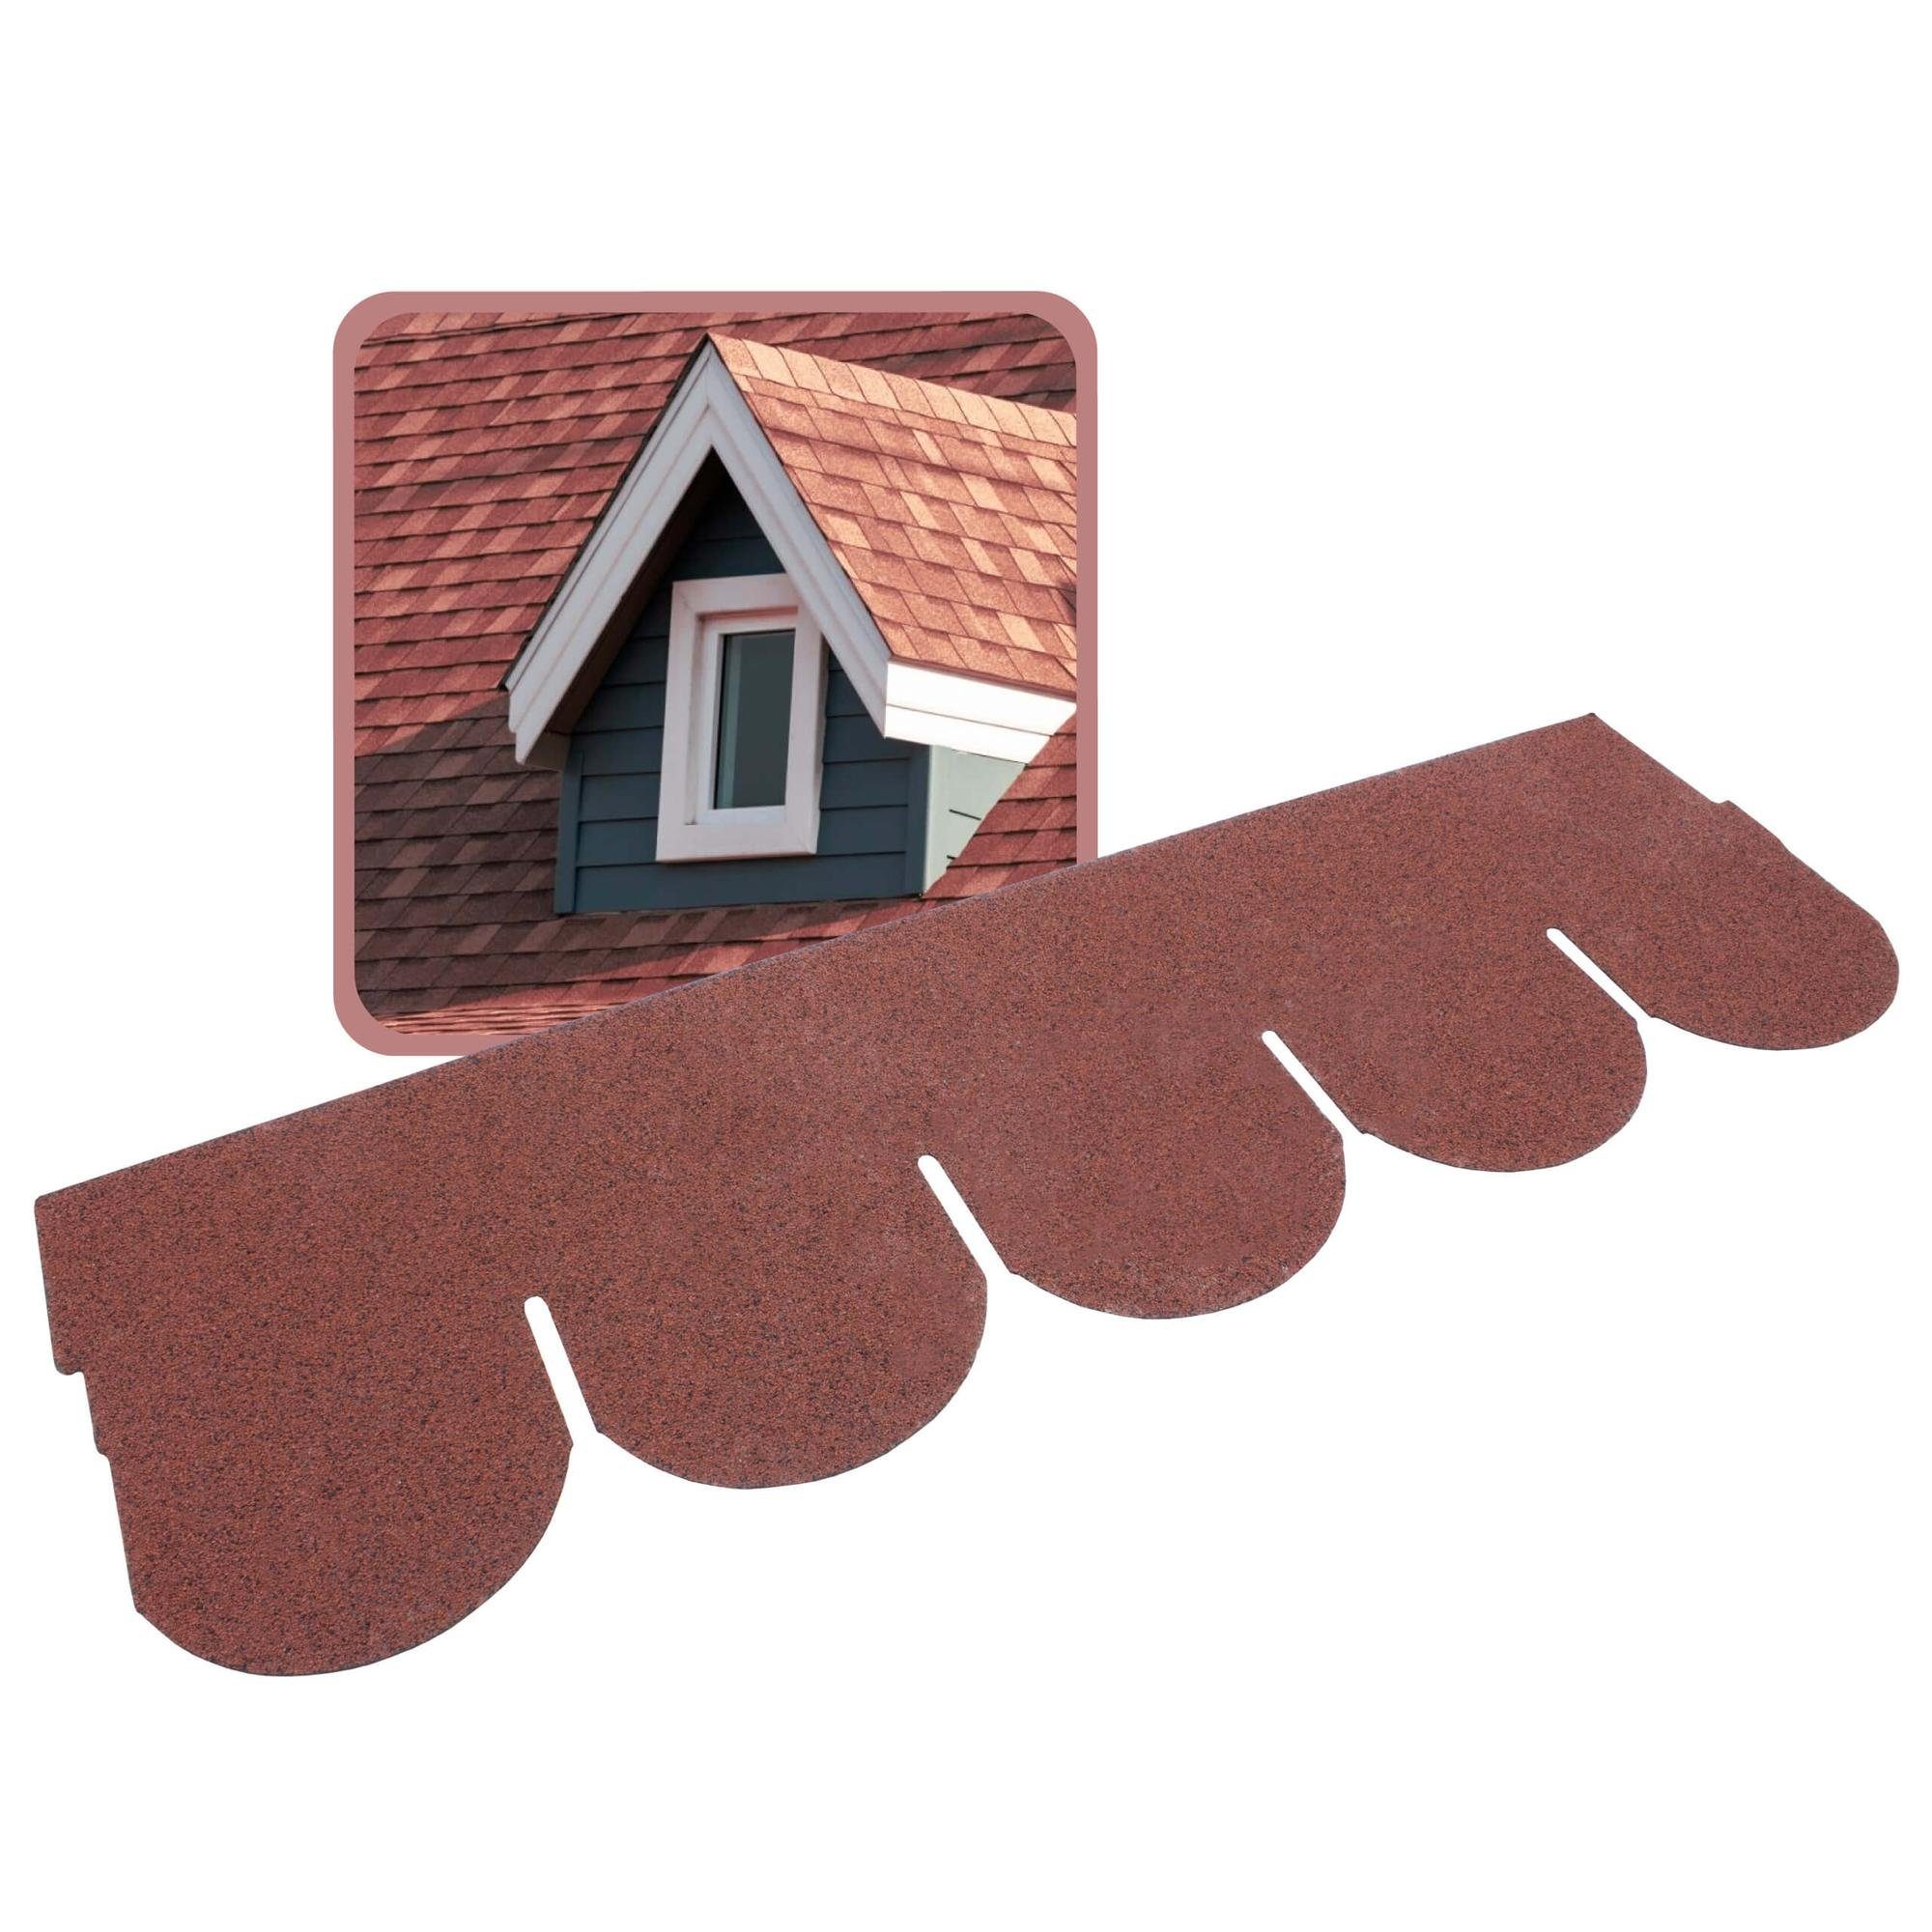 DAPRONA Dachschindeln Biberschwanz Dachschindeln, Rund 1m x 32cm, Rot, (20-St), Bitumenschindeln für Gartenhaus, Carport